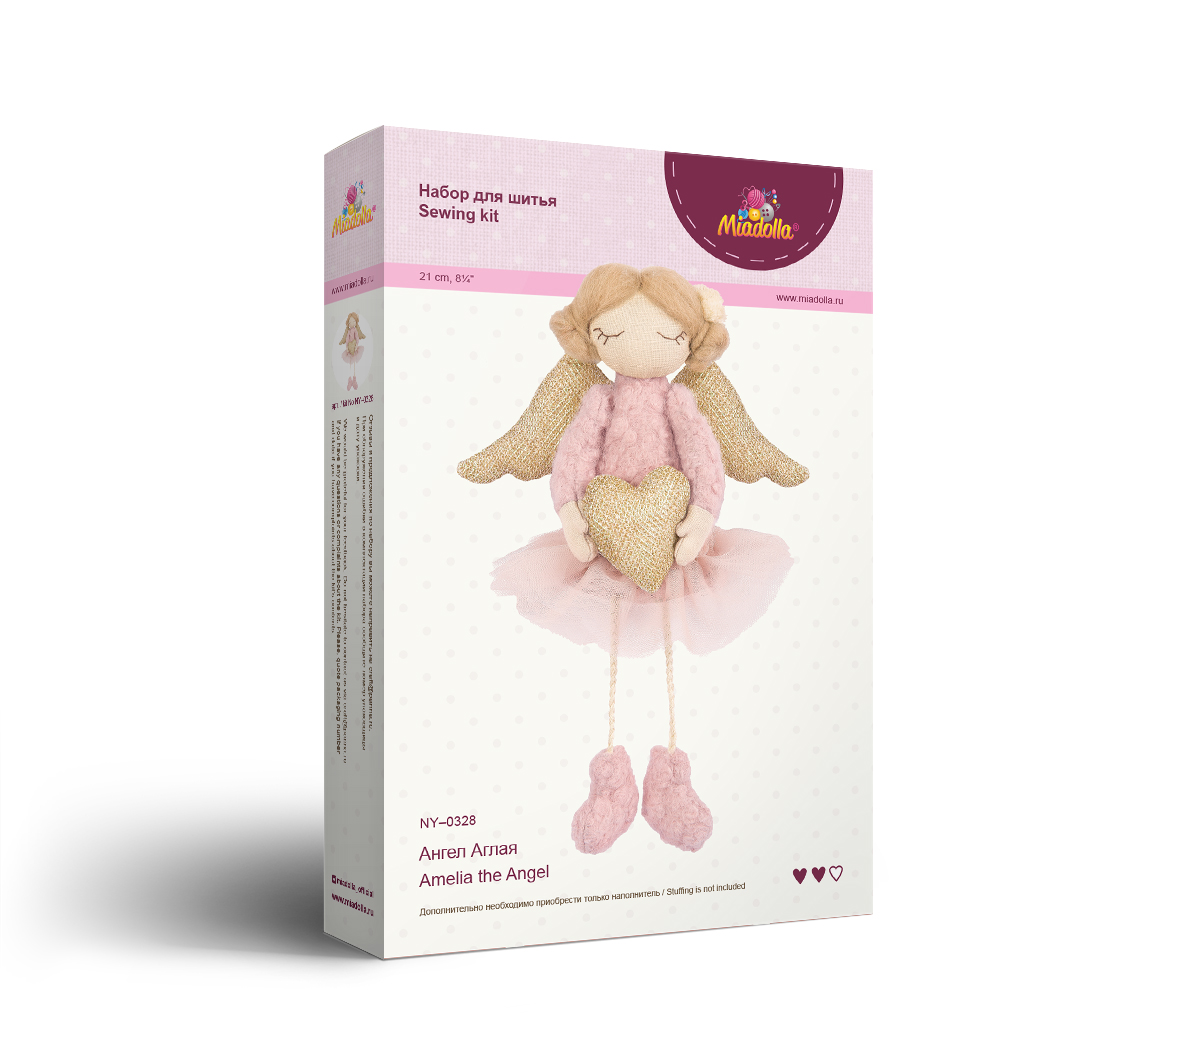 Декор новогодний мягкая игрушка Ангел с подсветкой 45см в ассортименте купить по цене 2 руб